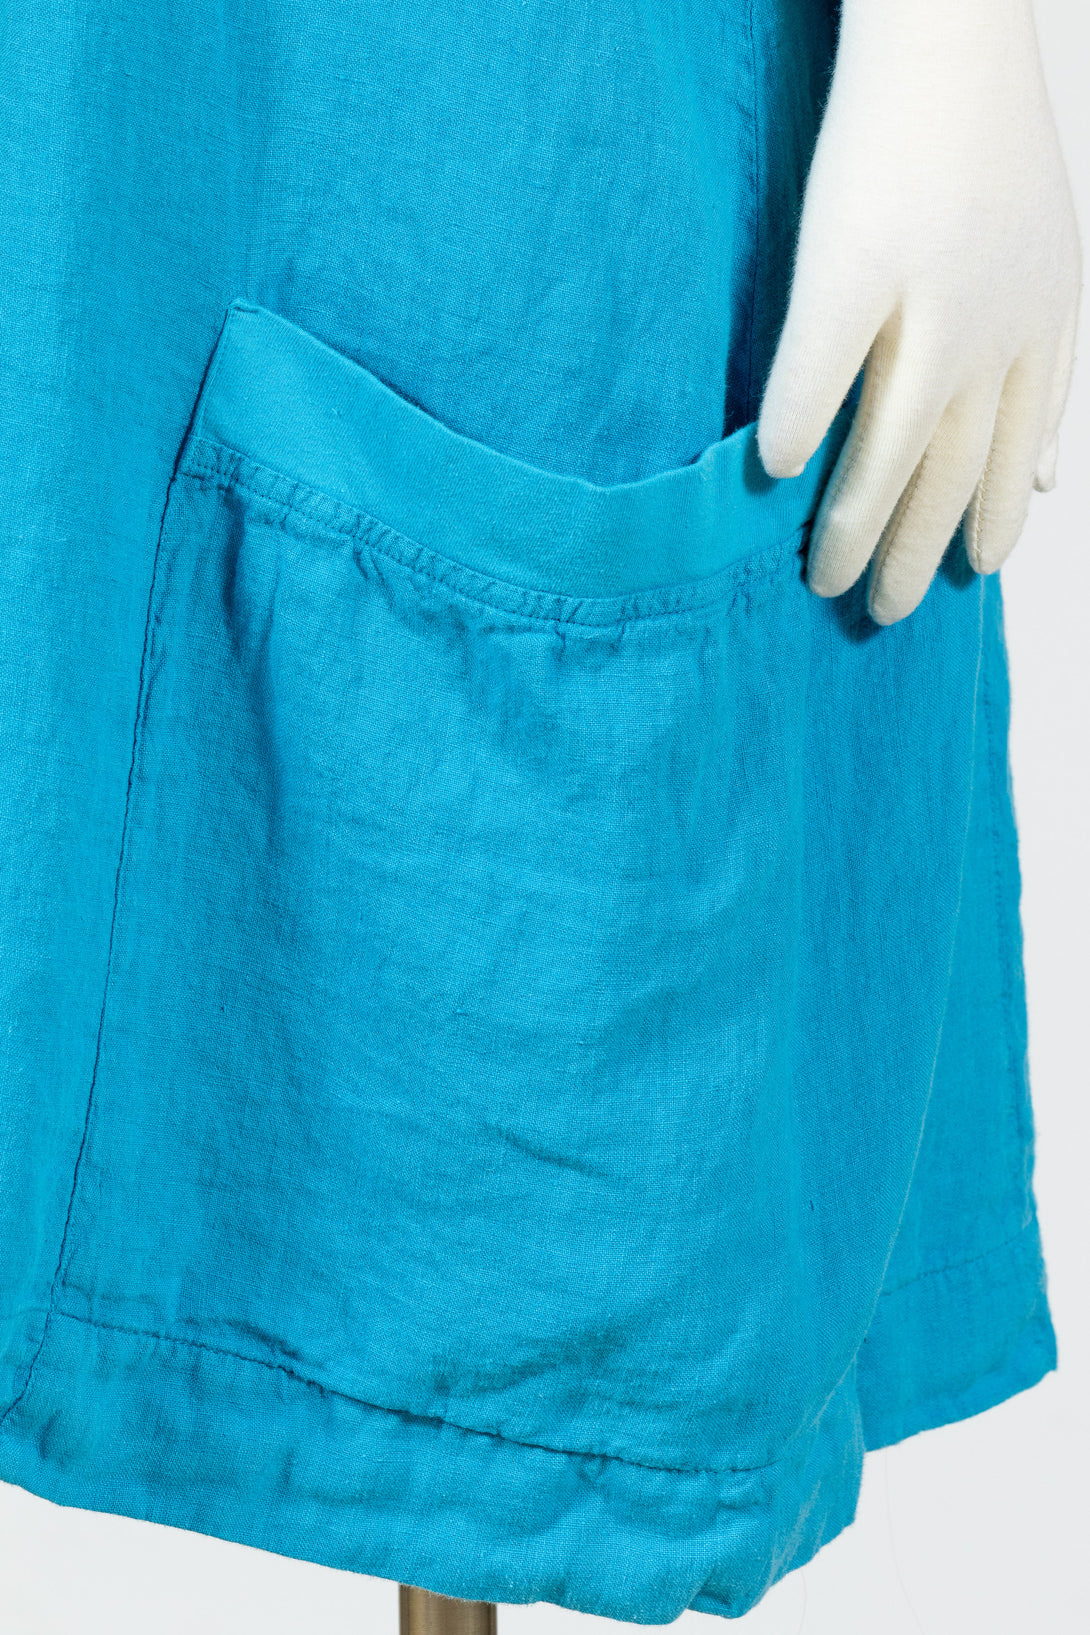 FLAX-Sunnyside-Dress-Linen-Caribbean-Blue